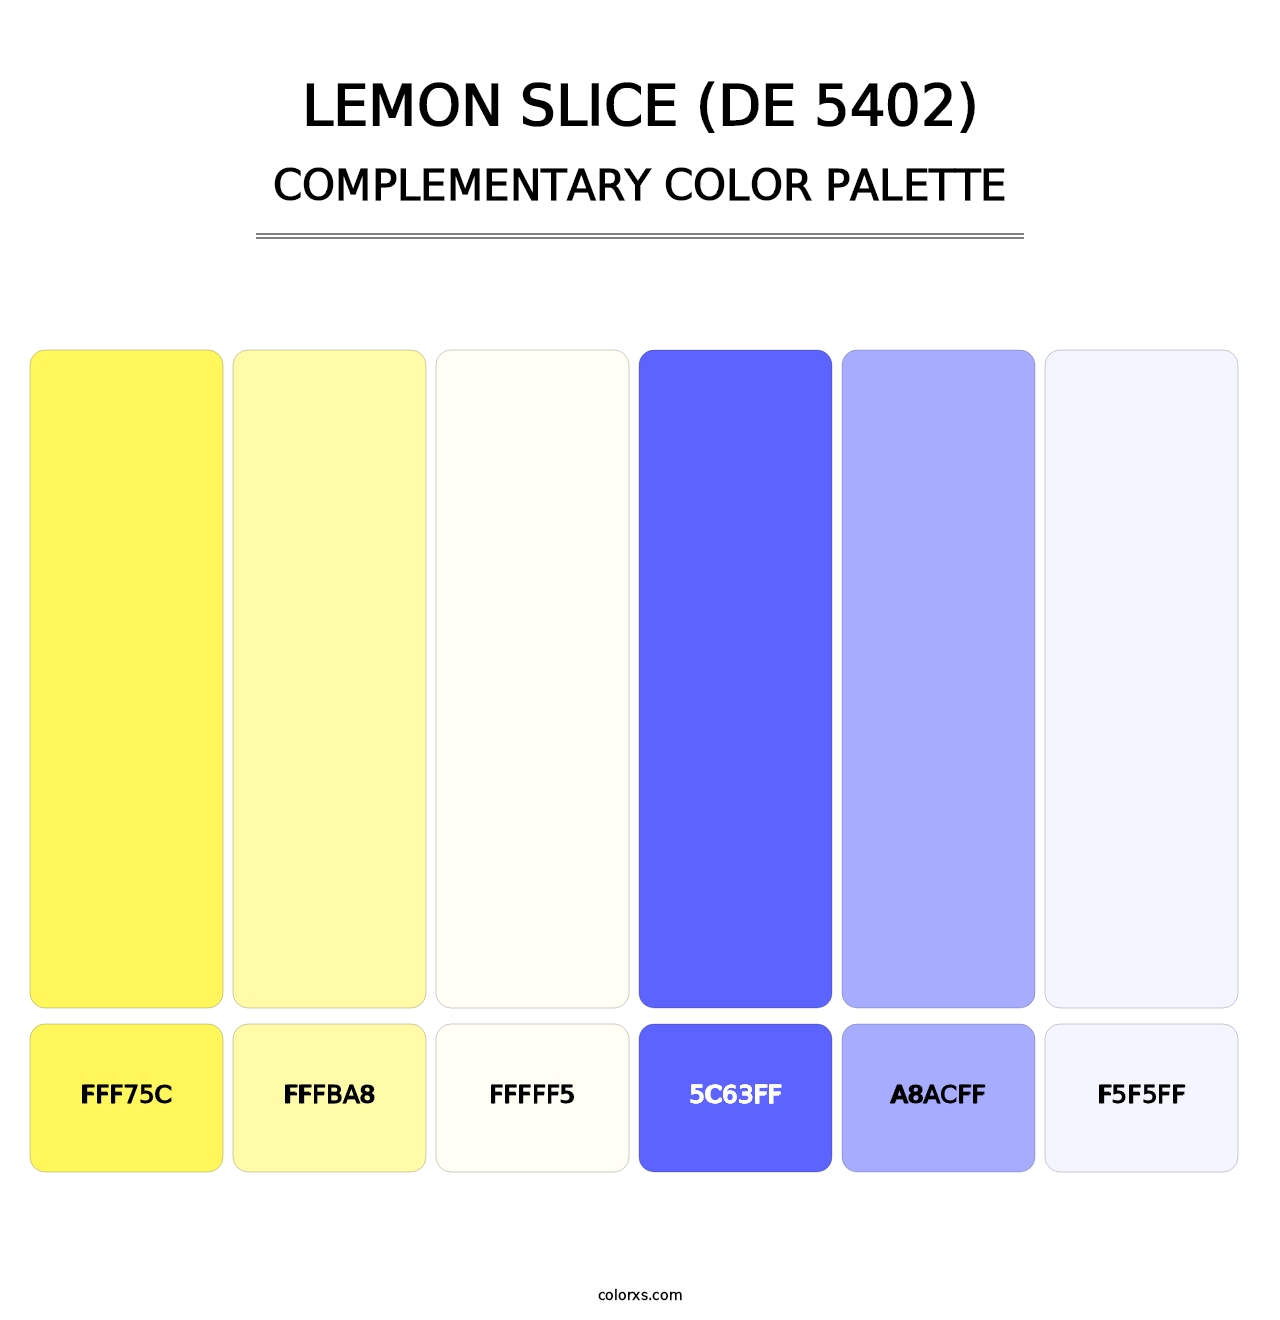 Lemon Slice (DE 5402) - Complementary Color Palette